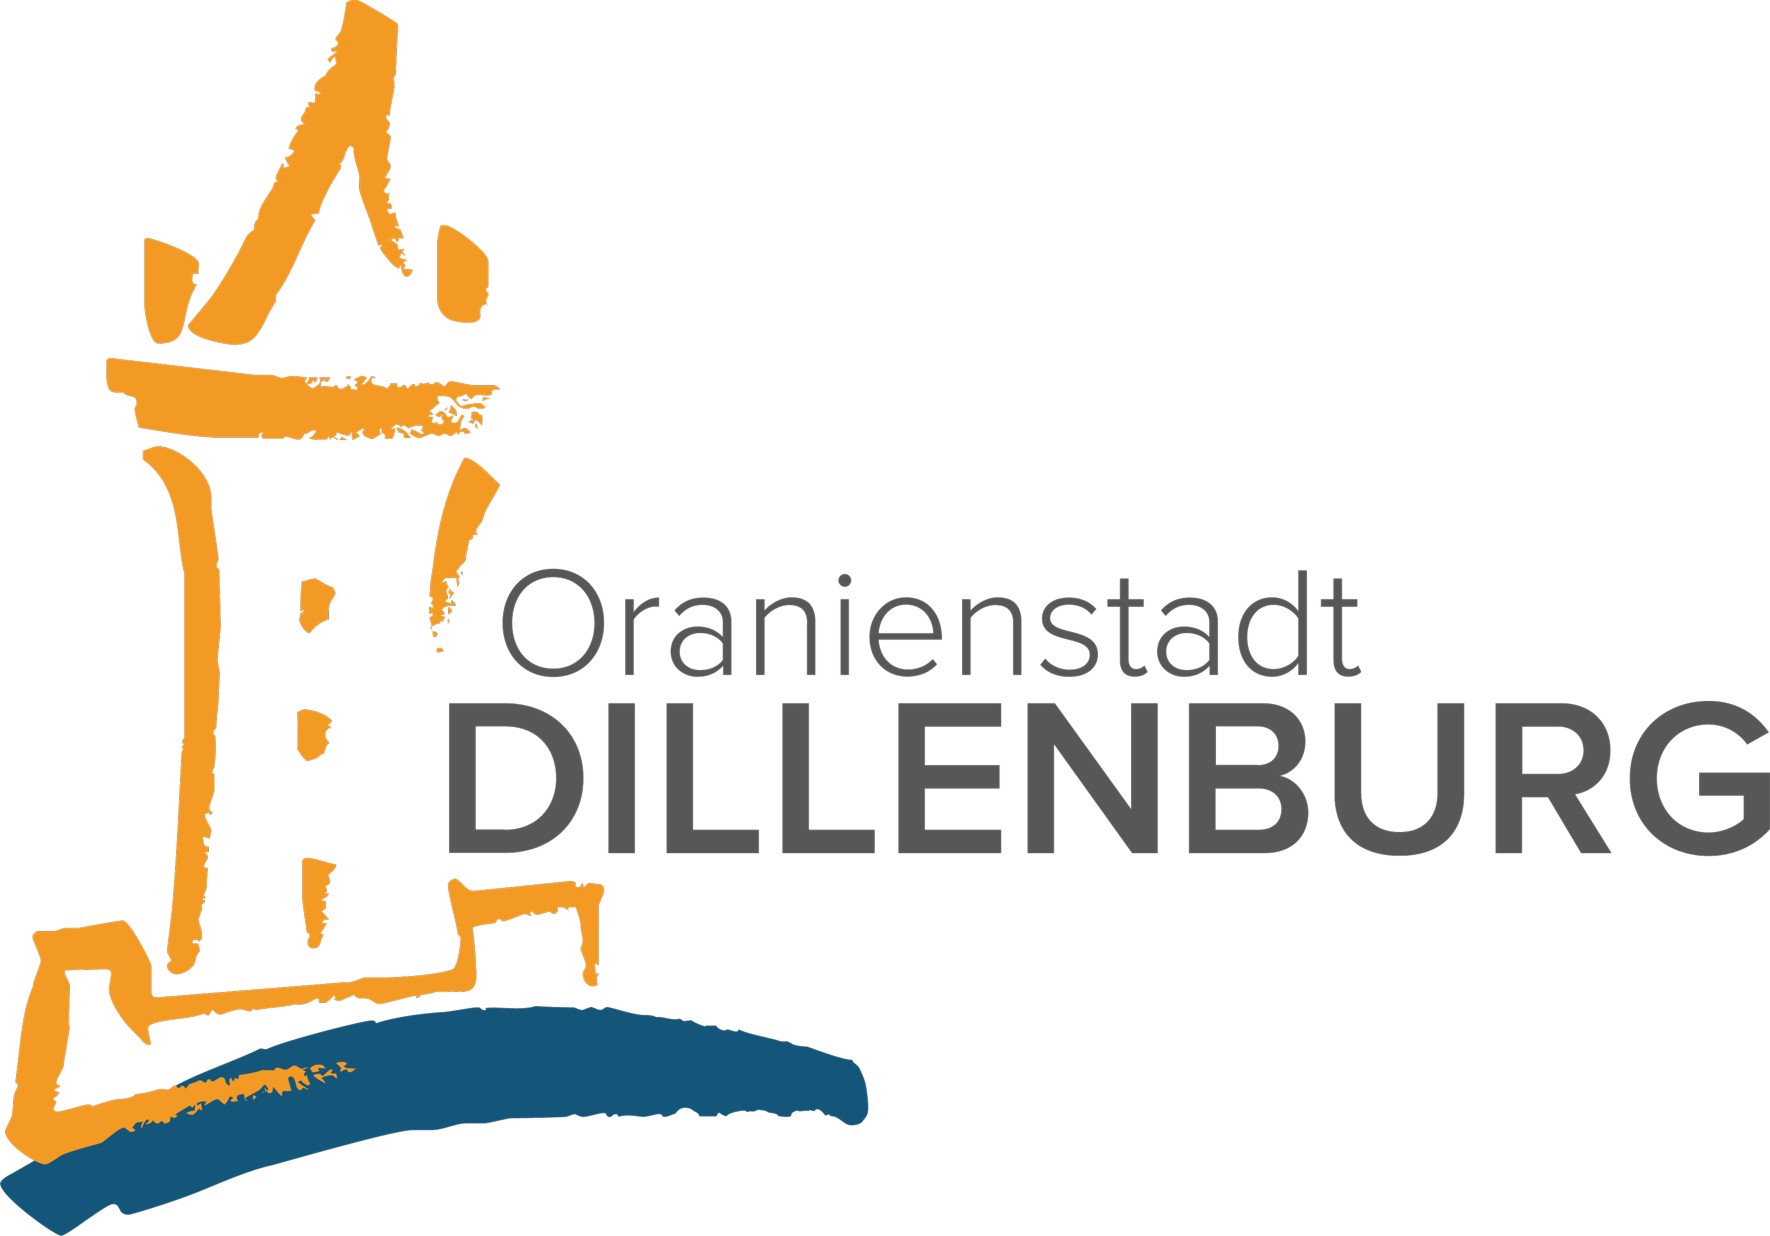 Logo der Oranienstadt Dillenburg, ein orangefarbener stilisierter Wilhelmsturm steht auf einer blauen geschwungenen Linie, die die Dill symbolisieren soll. Rechts daneben stehen in antrazith die Worte "Oranienstadt Dillenburg". Das Wort Dillenburg ist dabei fett geschrieben. Mit einem Klick auf das Bild gelangen Sie zum ganzen Artikel